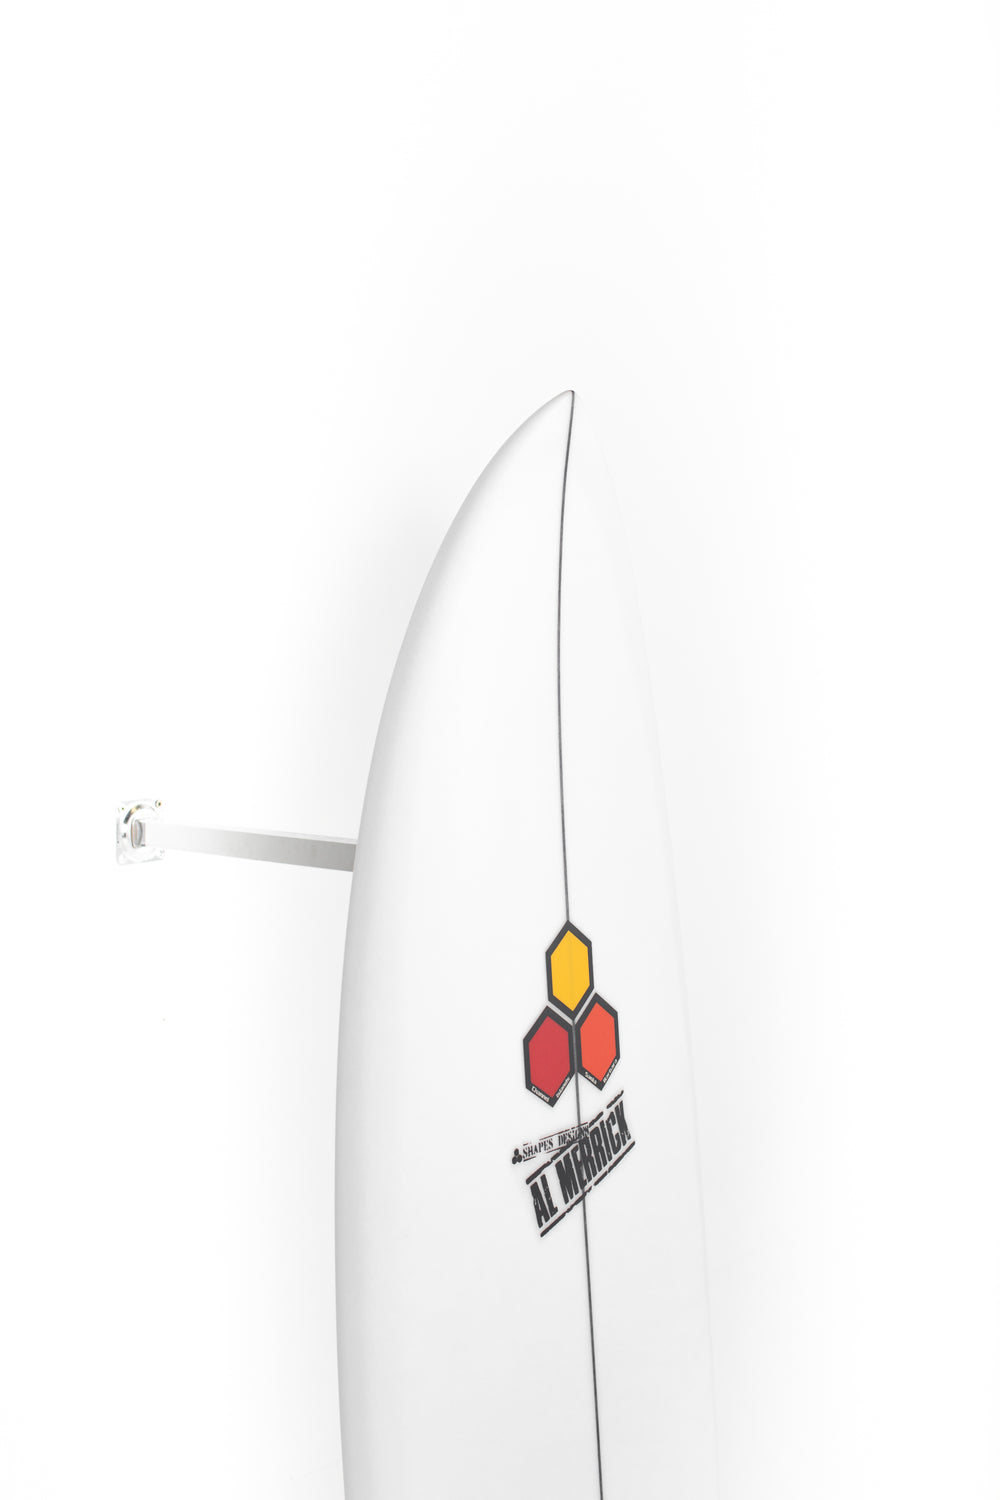 SURF8（サーフエイト）インナー SMCマグマコア起毛ショートジョン 83F4C1